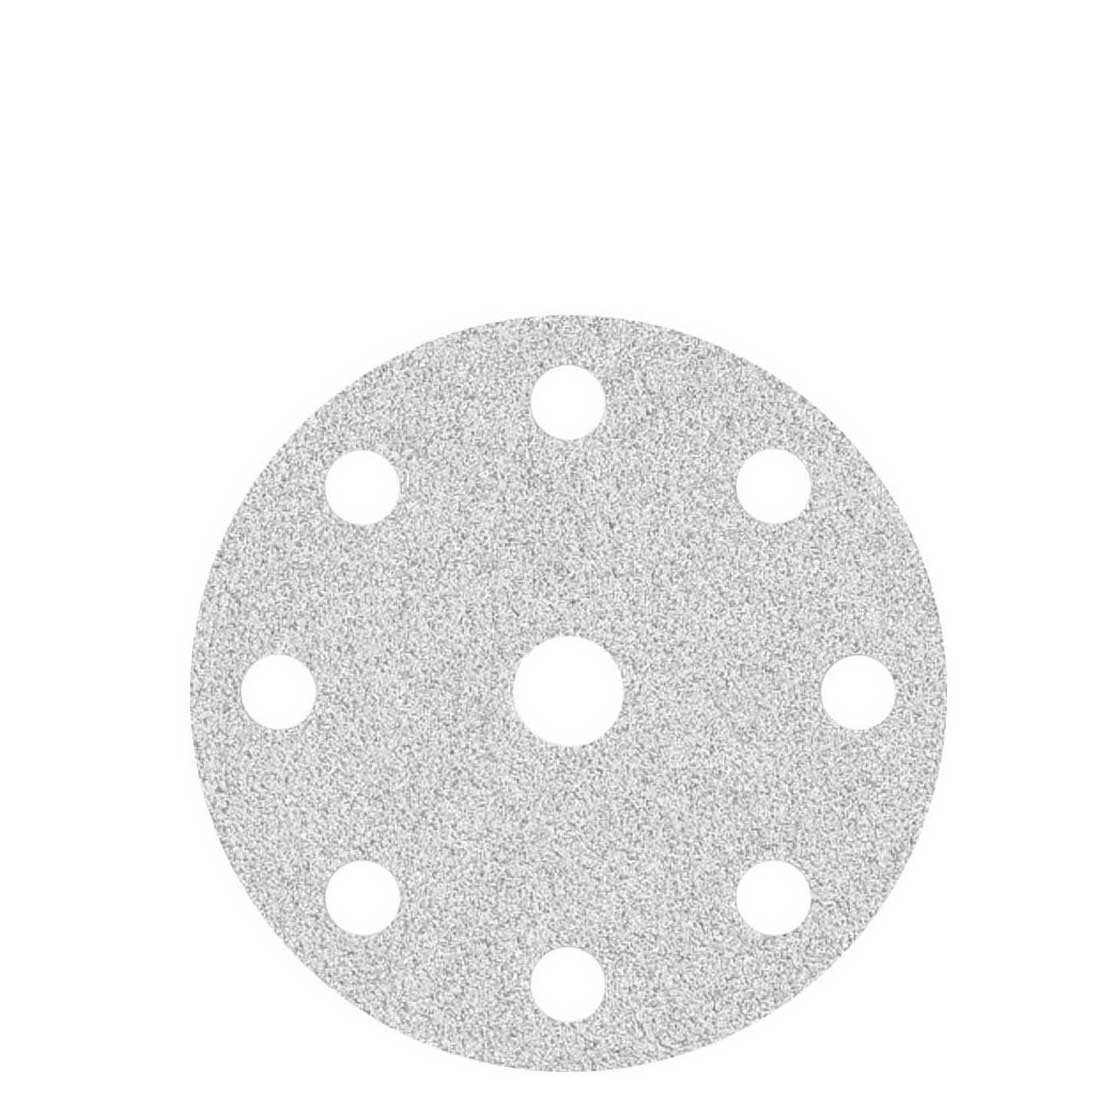 MioTools hook & loop sanding discs for random orbital sanders, G40–400, Ø 150 mm / 9 hole / stearated aluminium oxide